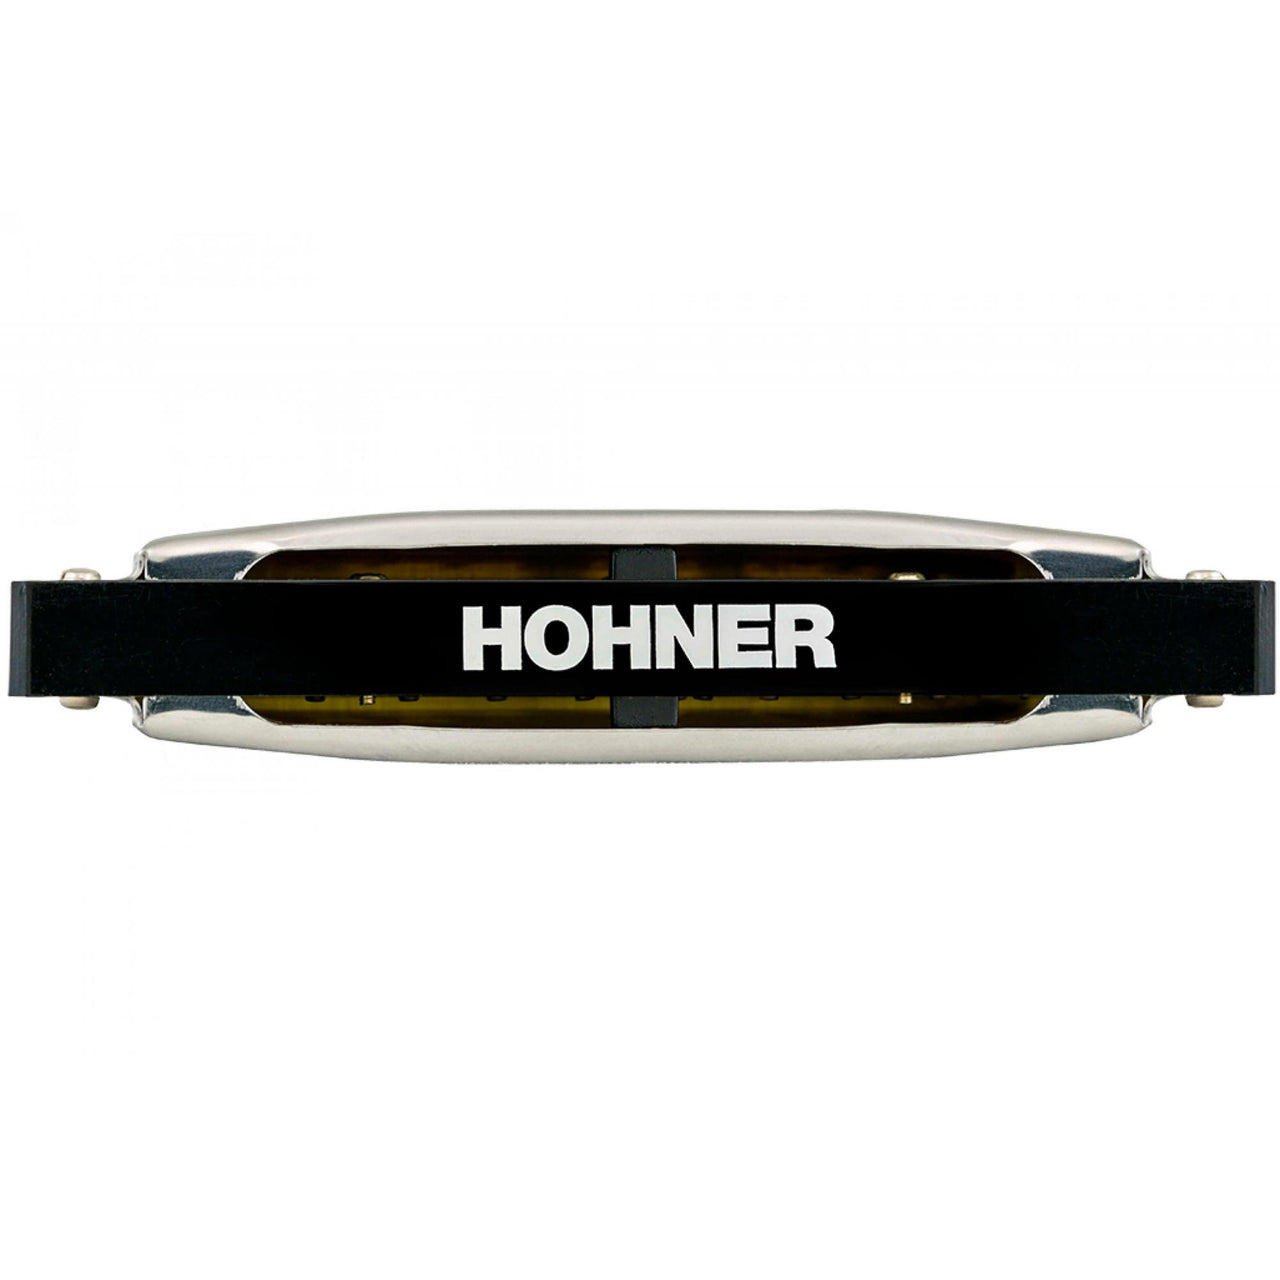 Armonica Hohner M5041067 Silver Star La 20v